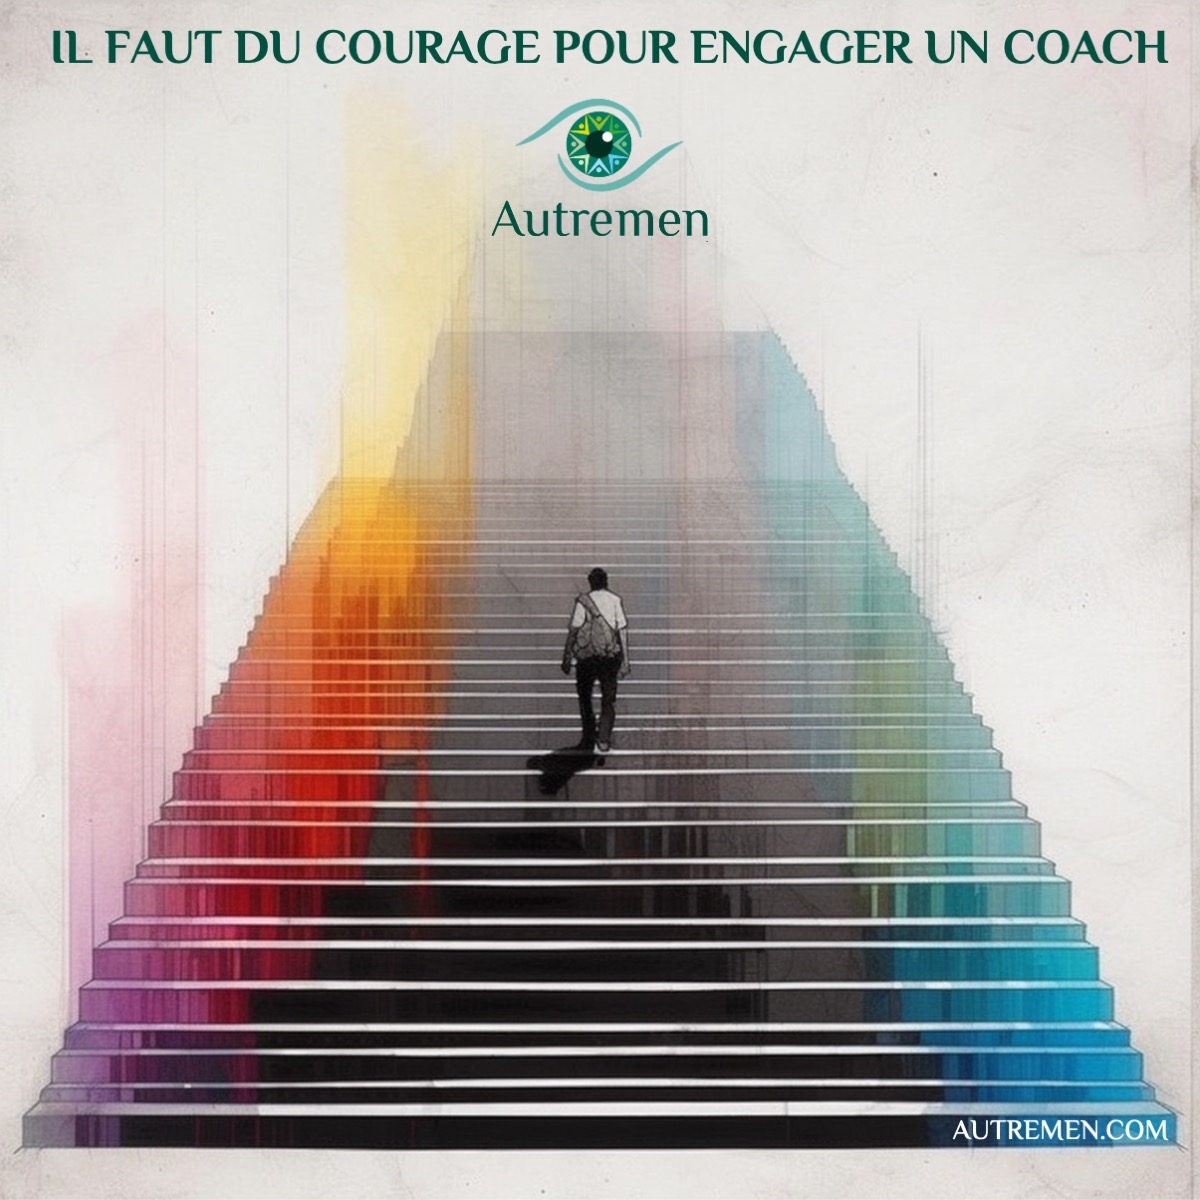 Il faut du courage pour engager un coach !